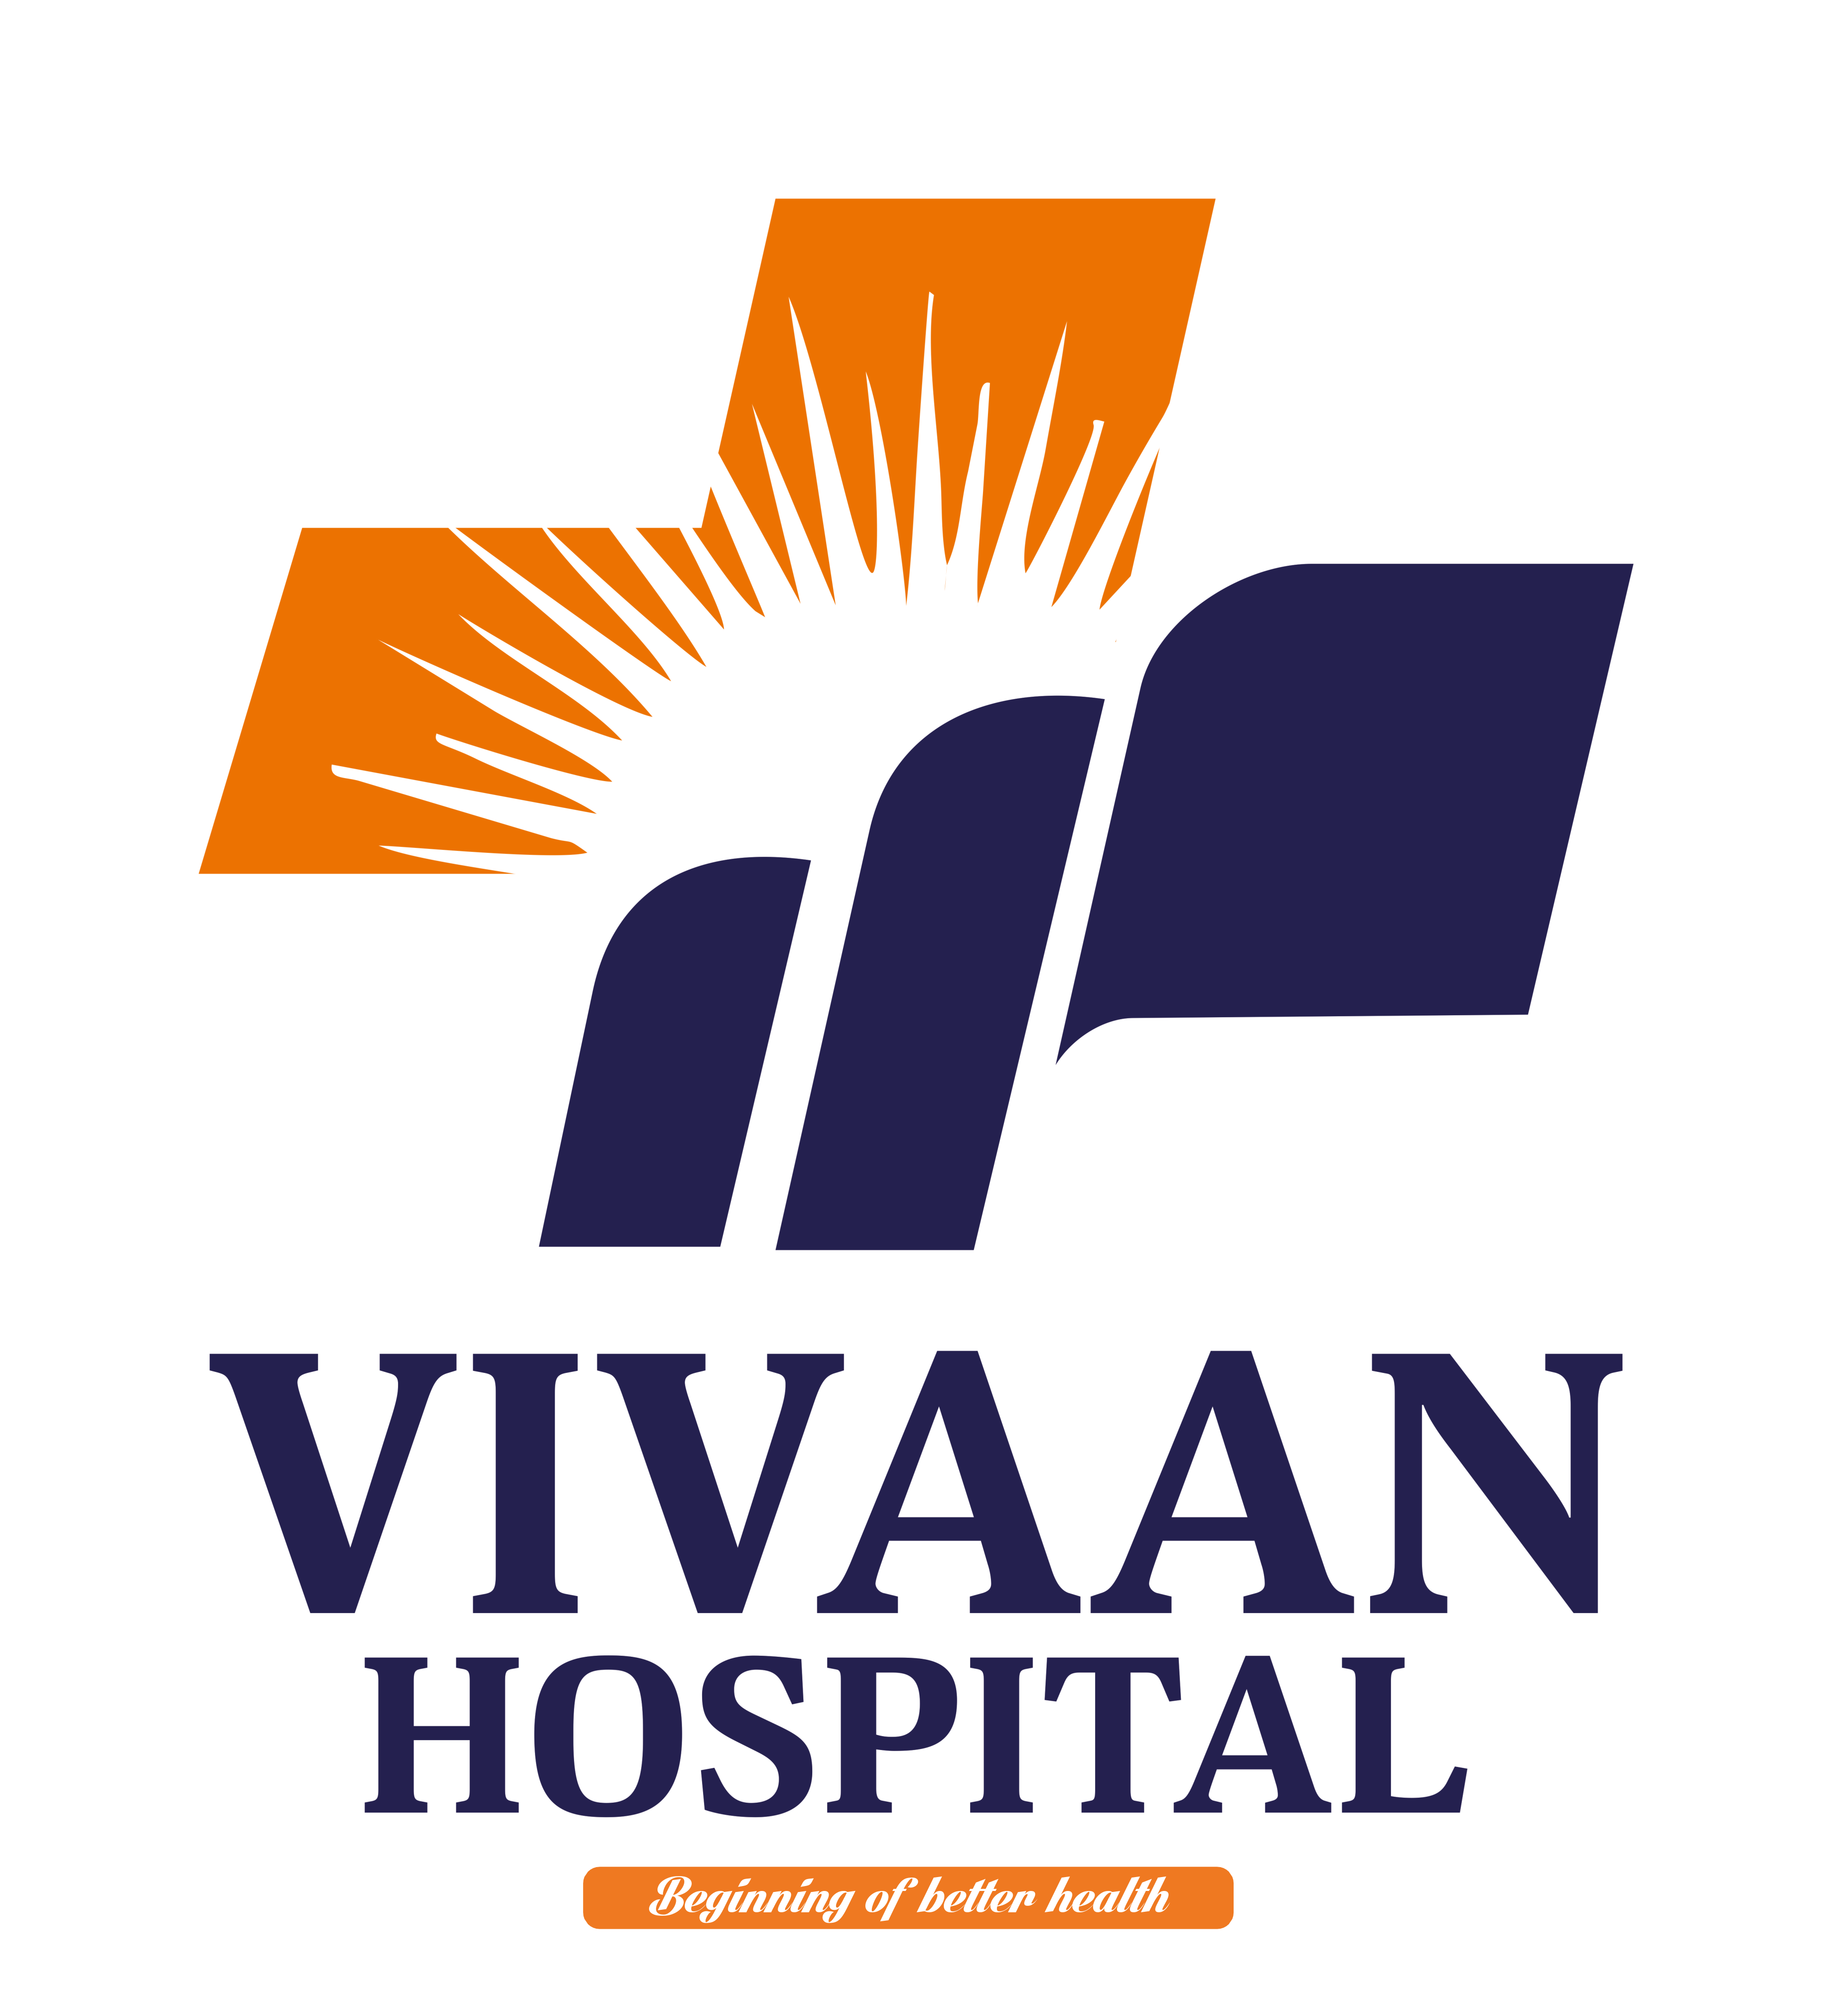 vivaanhospital